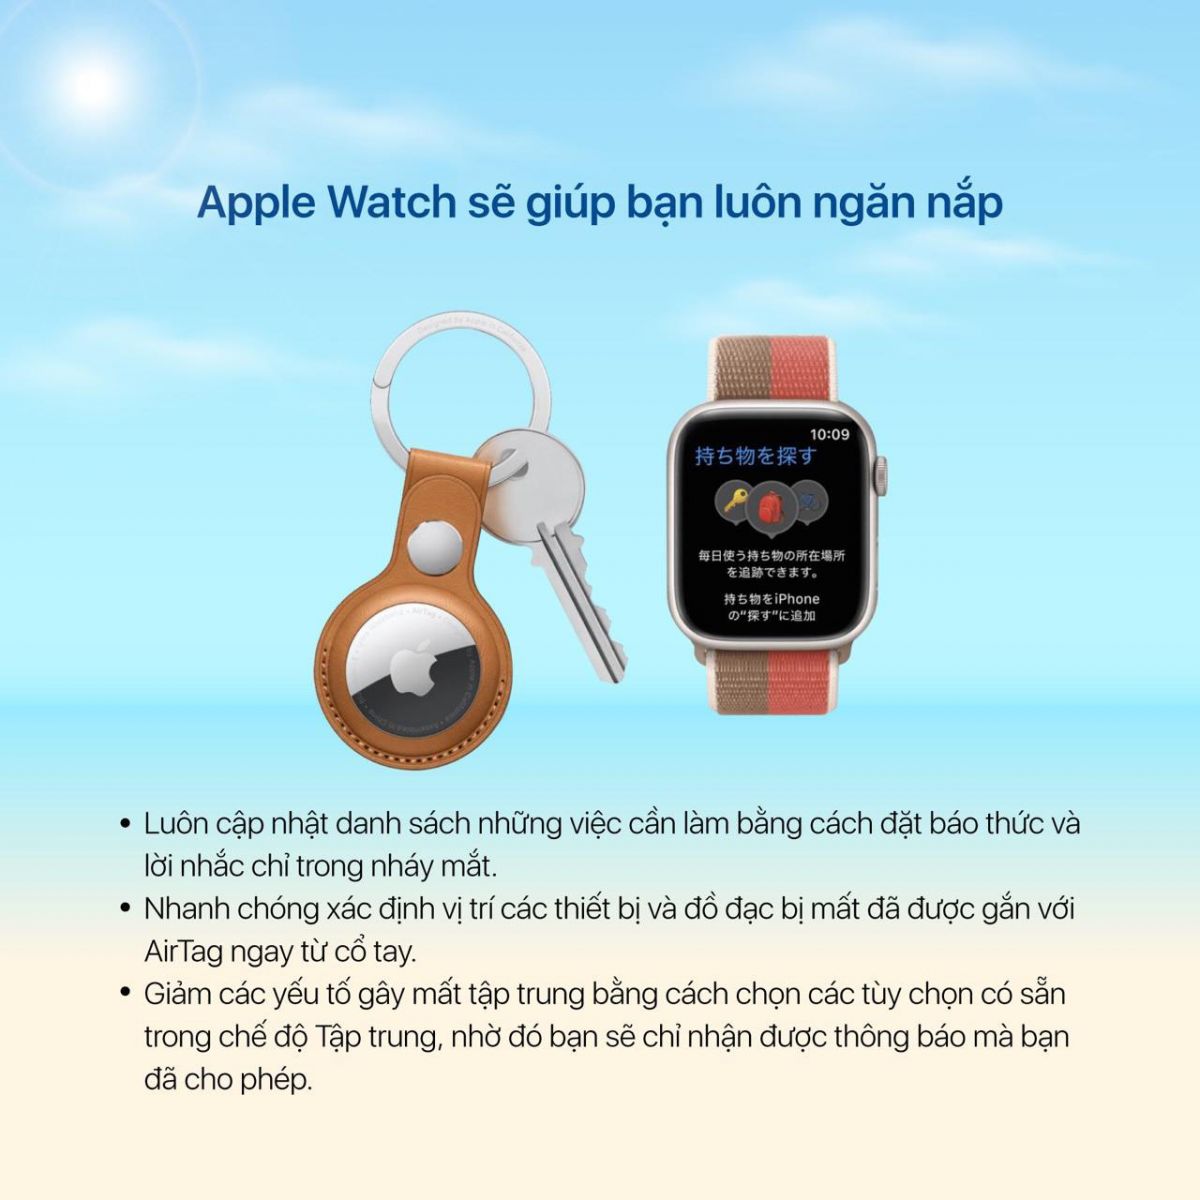 Apple Watch sẽ giúp bạn luôn ngăn nắp